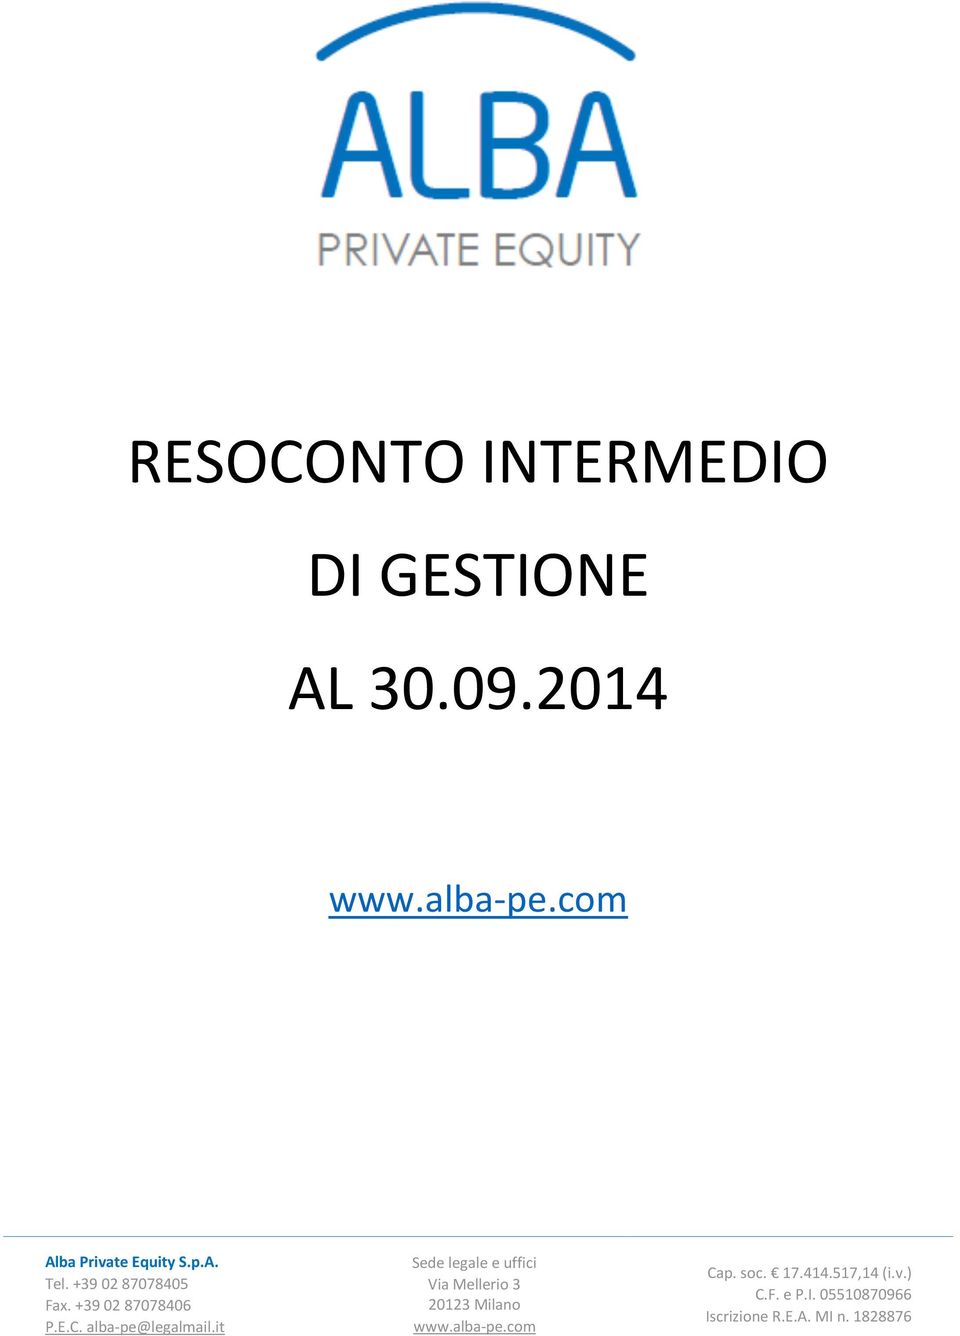 alba-pe@legalmail.it Sede legale e uffici Via Mellerio 3 20123 Milano www.